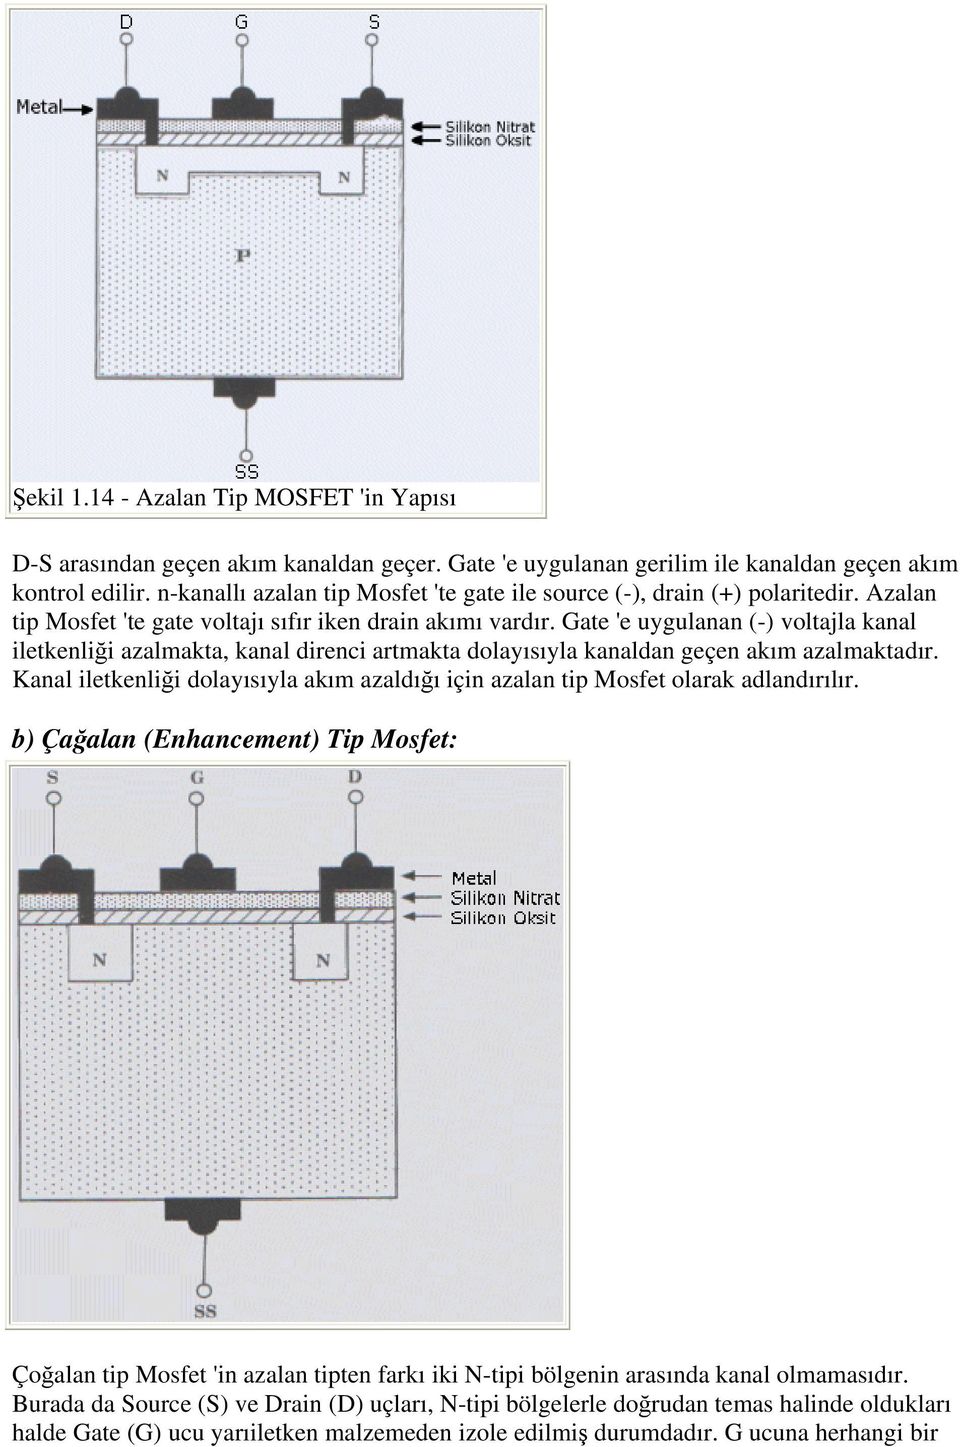 Gate 'e uygulanan (-) voltajla kanal iletkenliği azalmakta, kanal direnci artmakta dolayısıyla kanaldan geçen akım azalmaktadır.